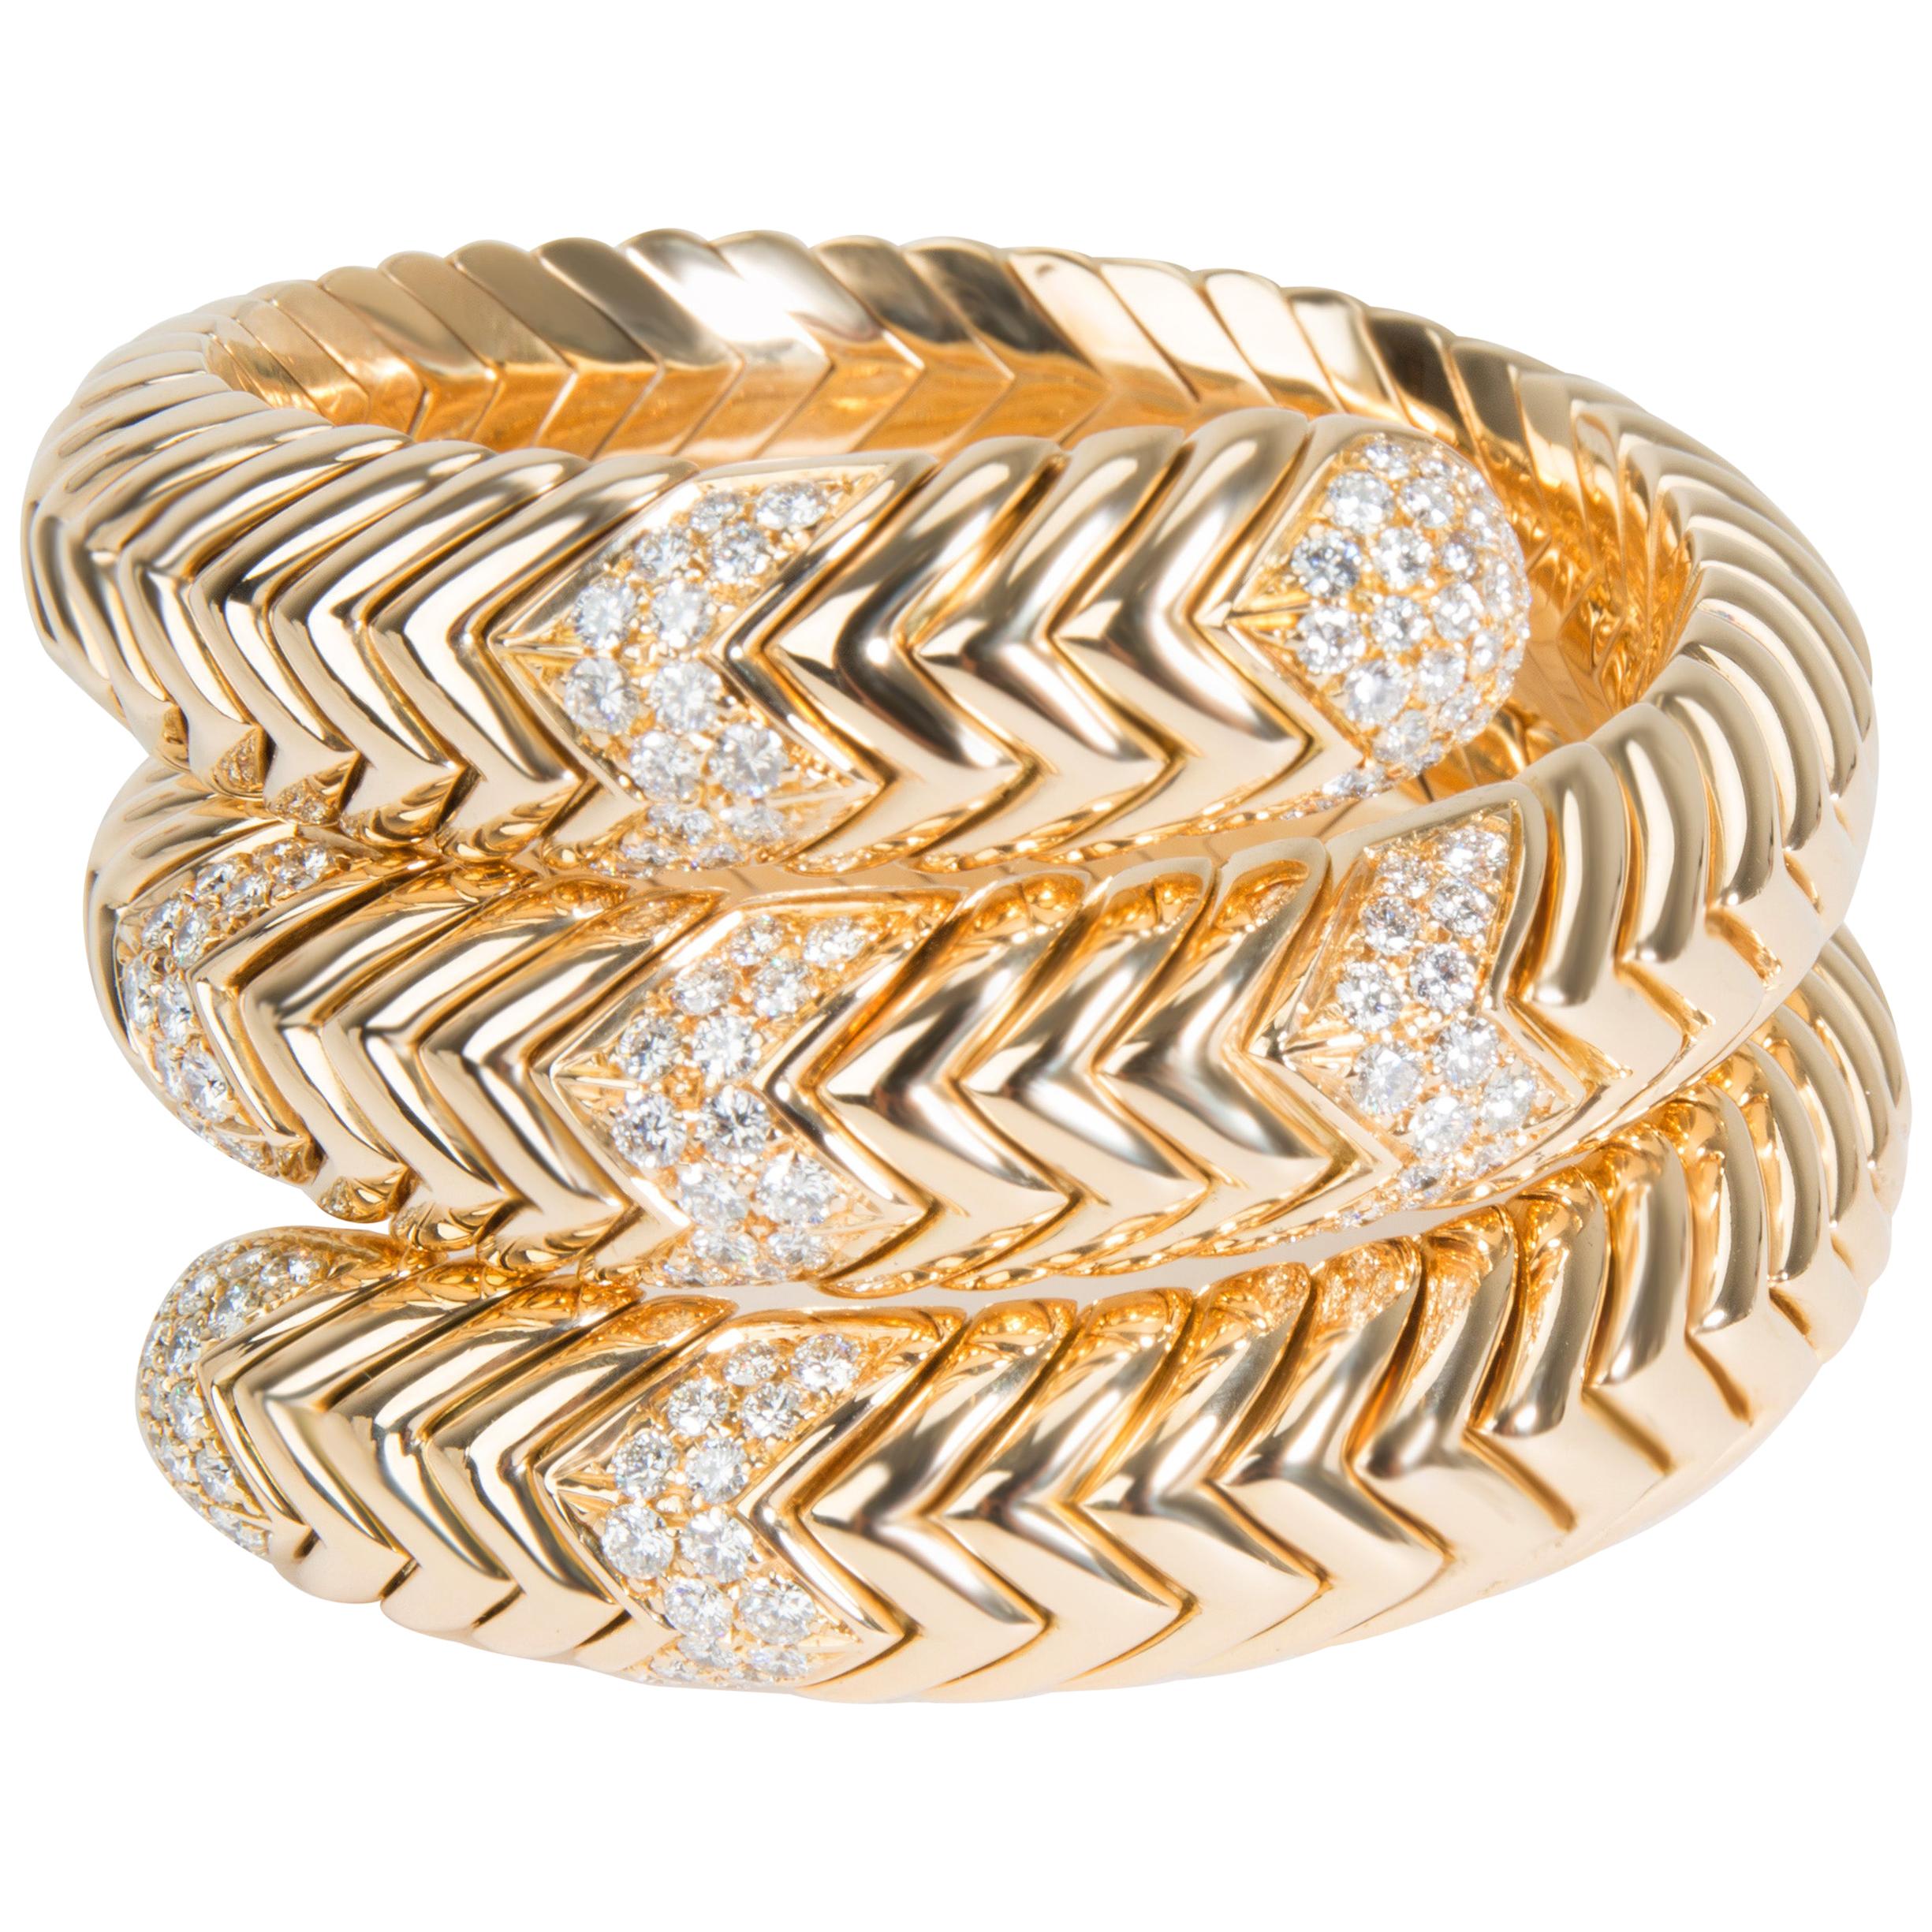 Bulgari Spiga Wrap Diamond Bracelet in 18 Karat Yellow Gold 3.50 Carat